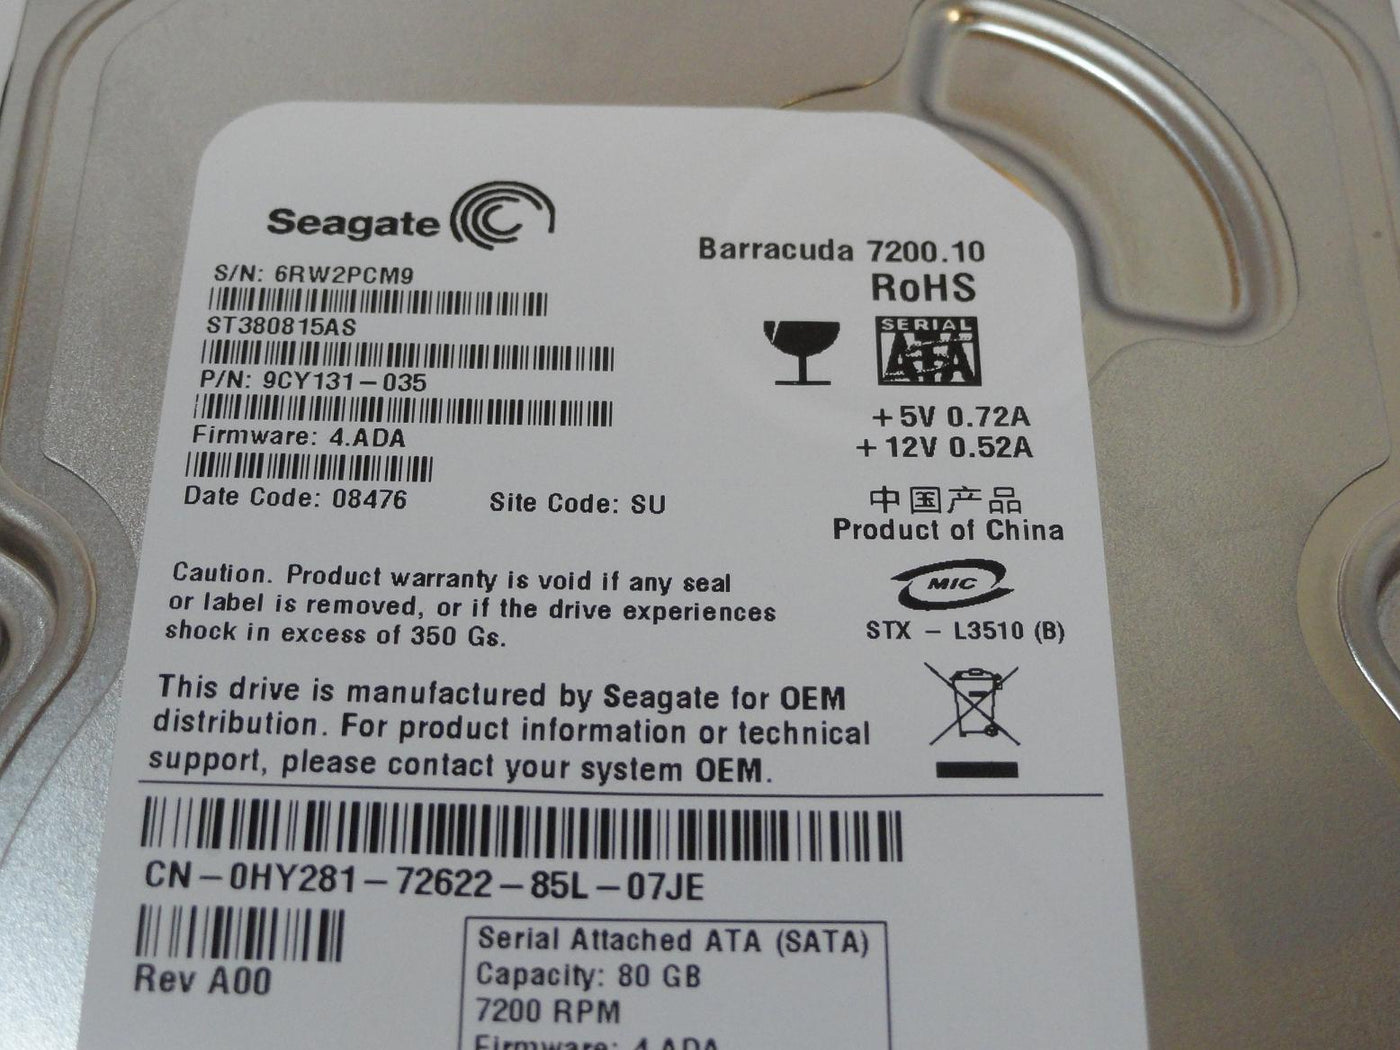 PR20066_9CY131-035_Seagate Dell 80GB SATA 7200rpm 3.5in HDD - Image3